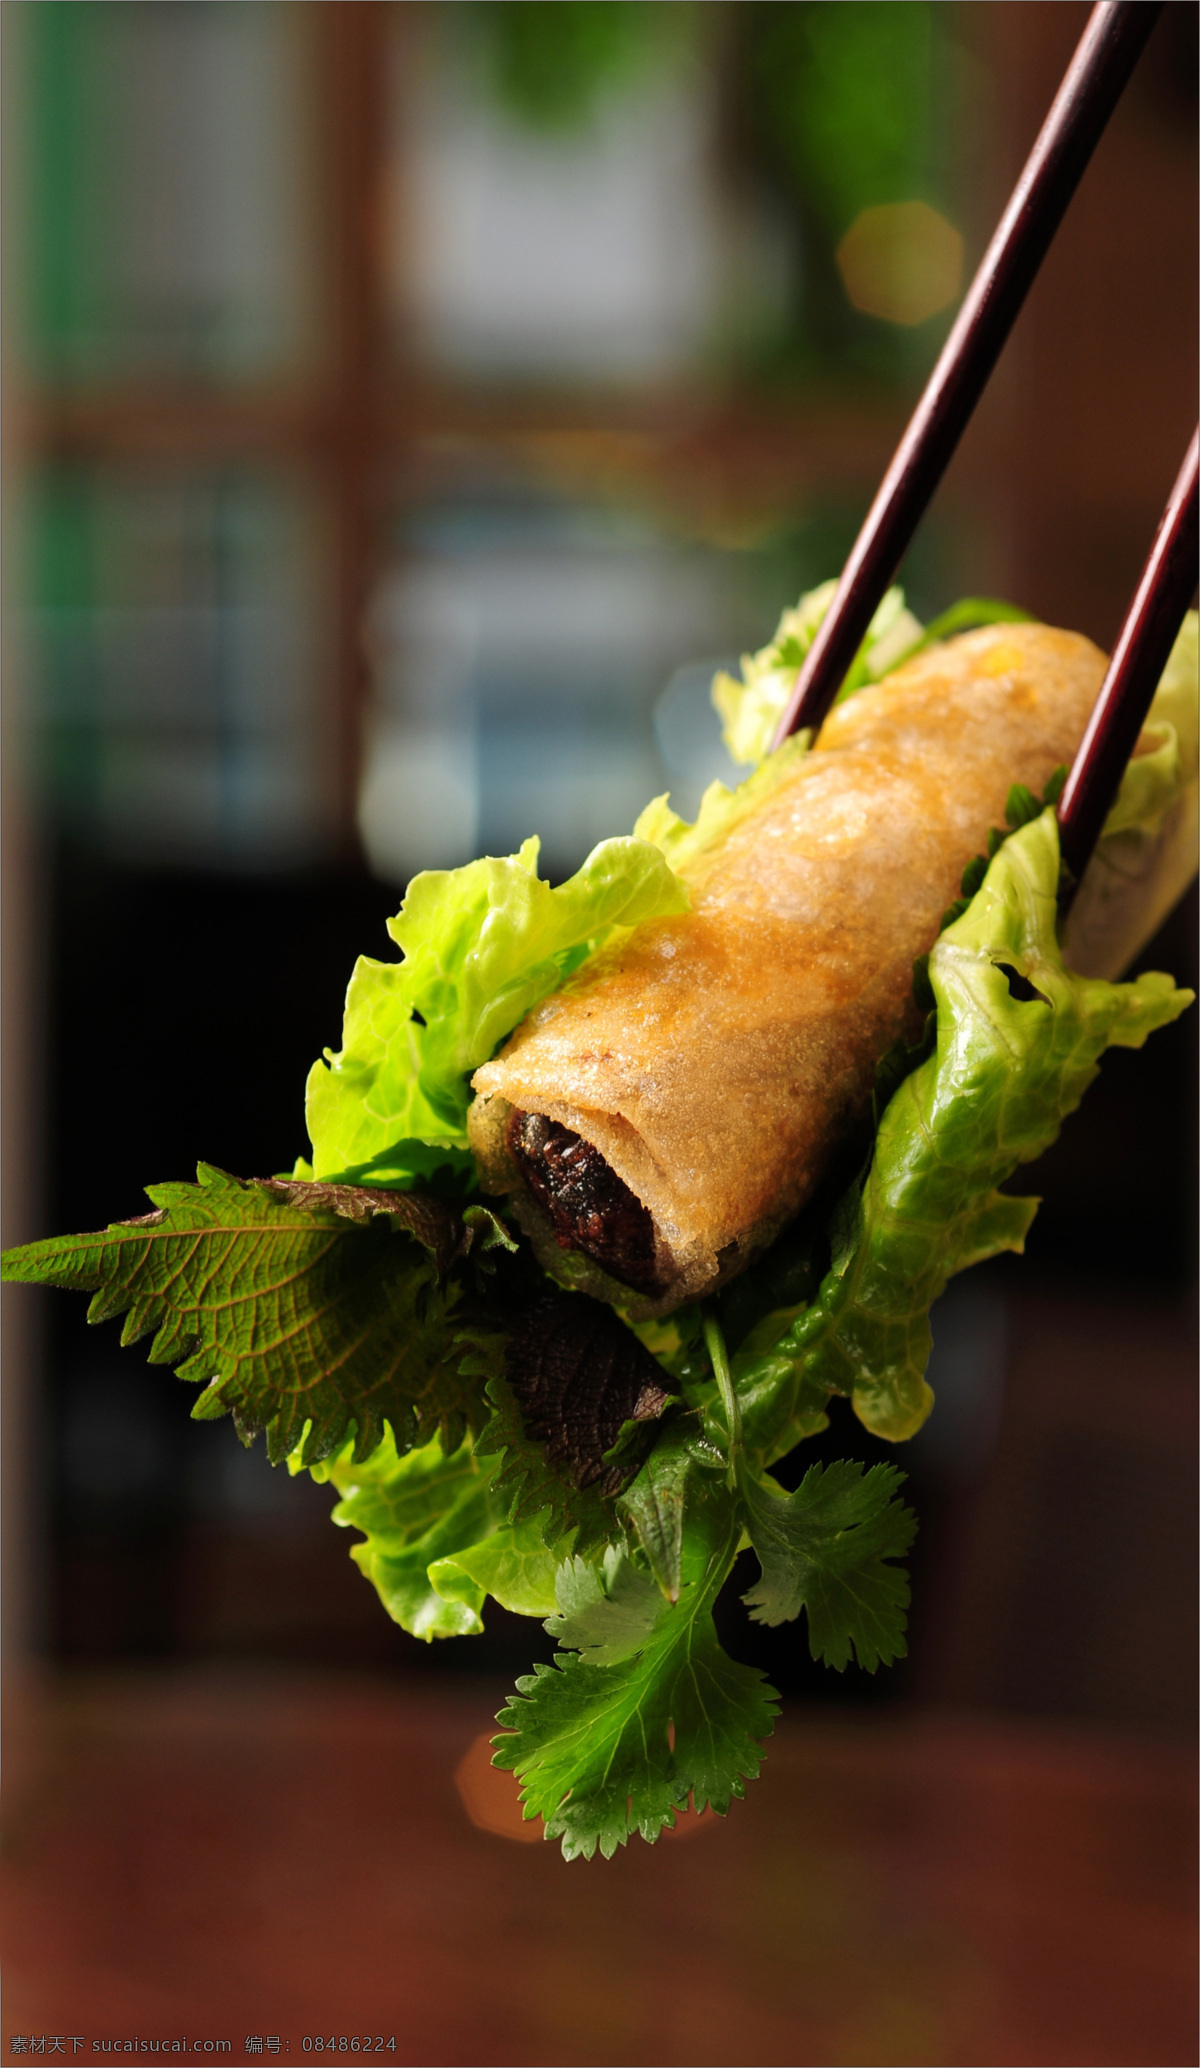 越式炸春卷 越式 春卷 油炸 菜谱制作 高精度 餐饮美食 传统美食